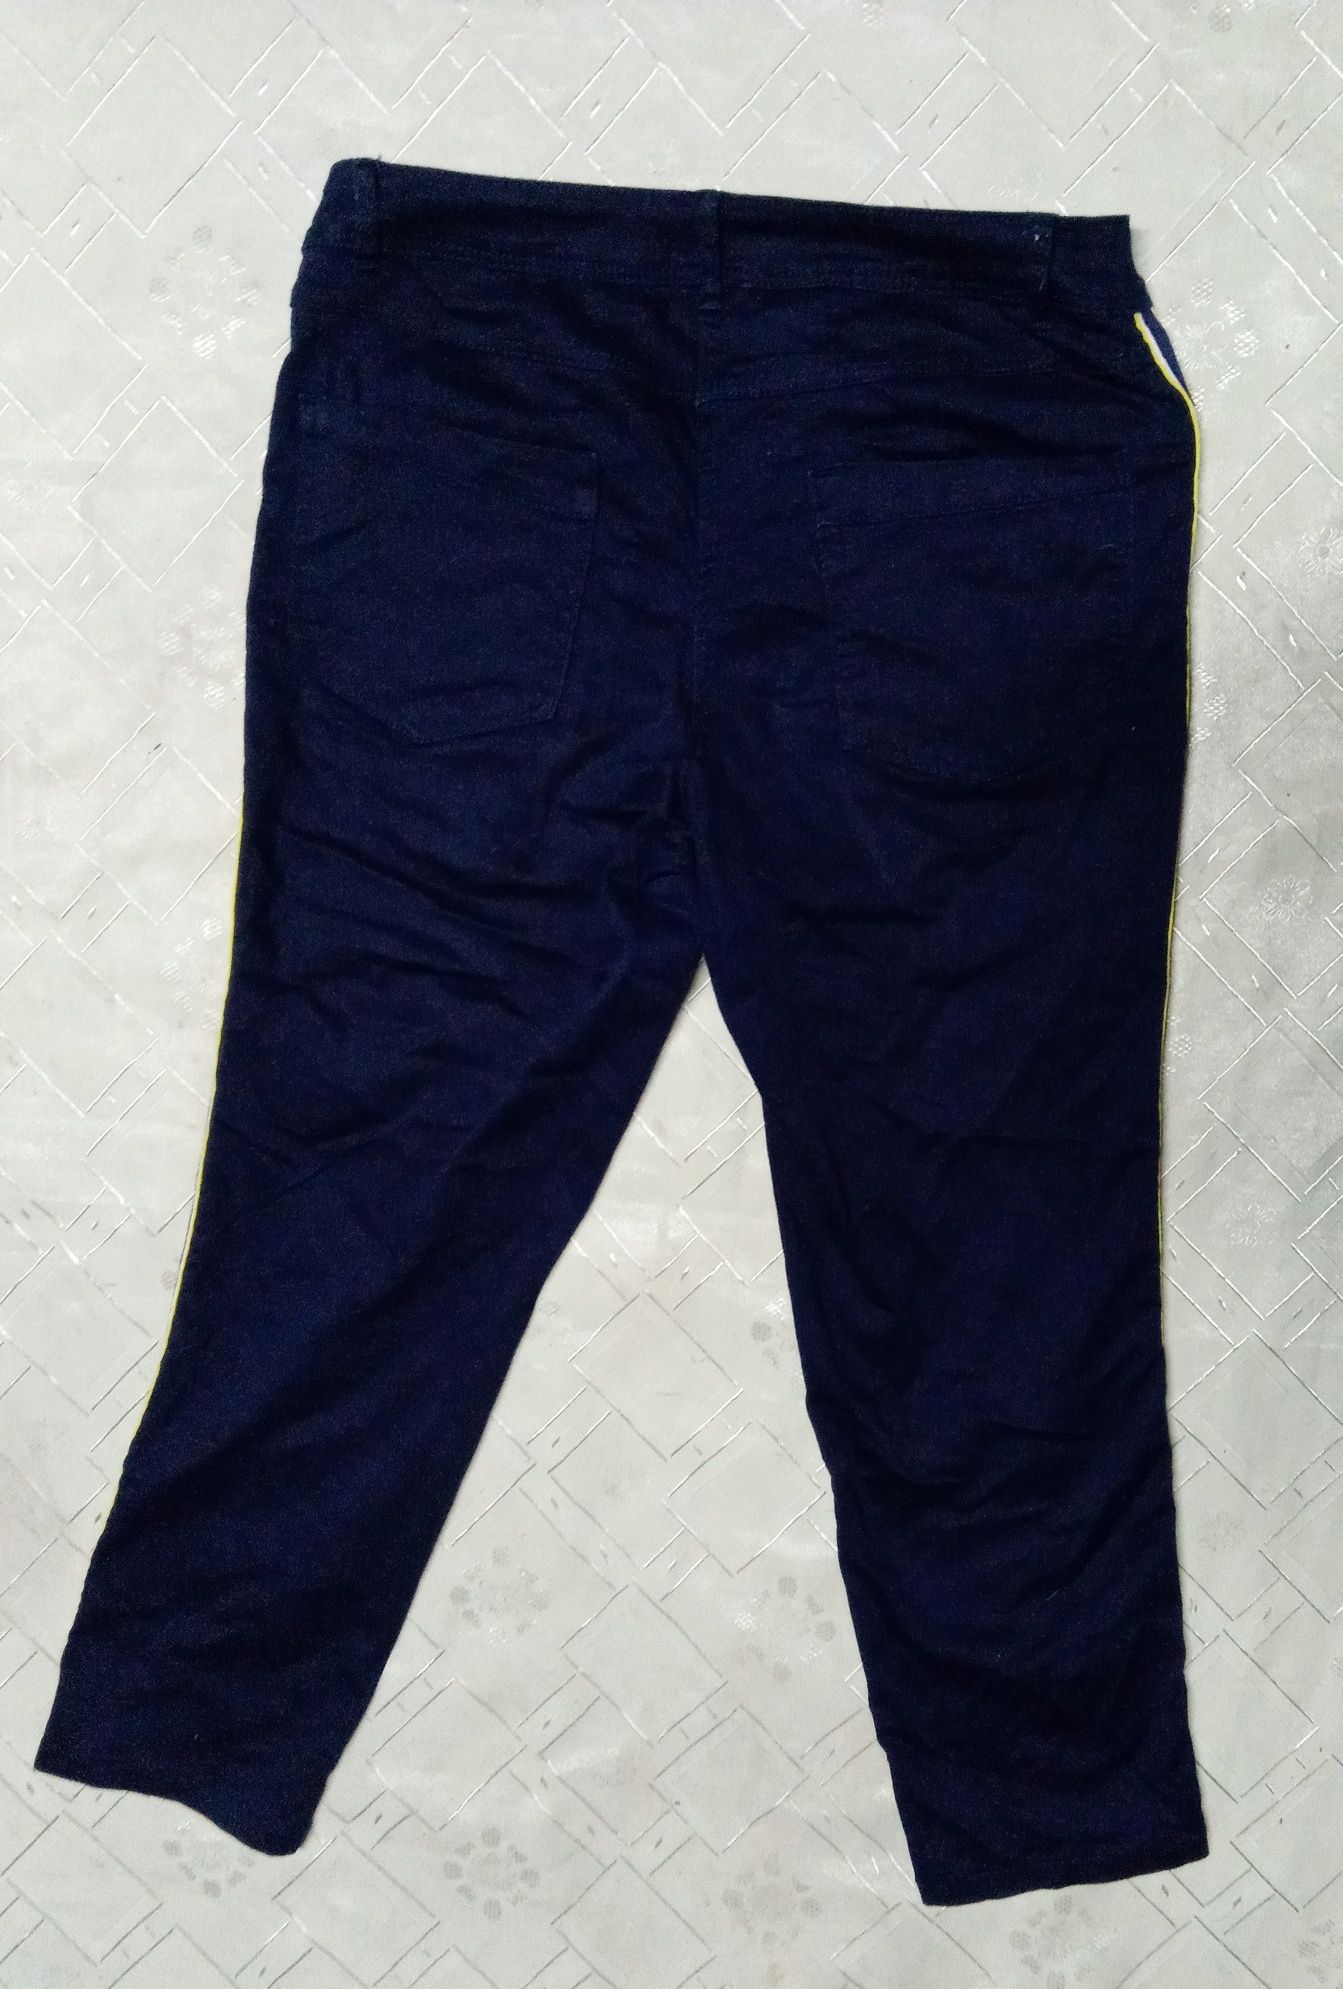 Женские стрейчевые джинсы-50-52 размер